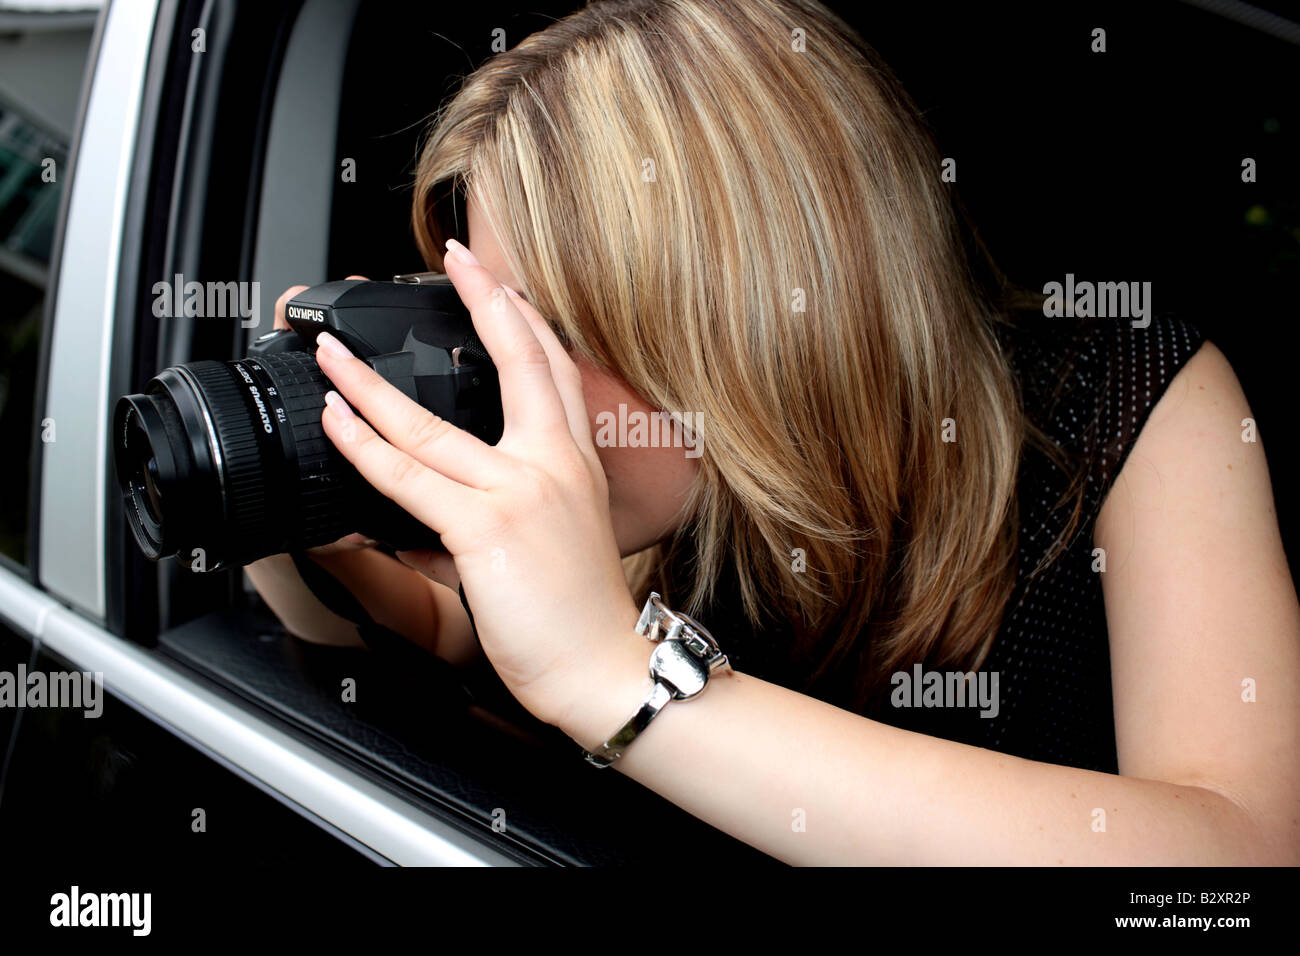 Young woman taking photos parution du modèle Banque D'Images